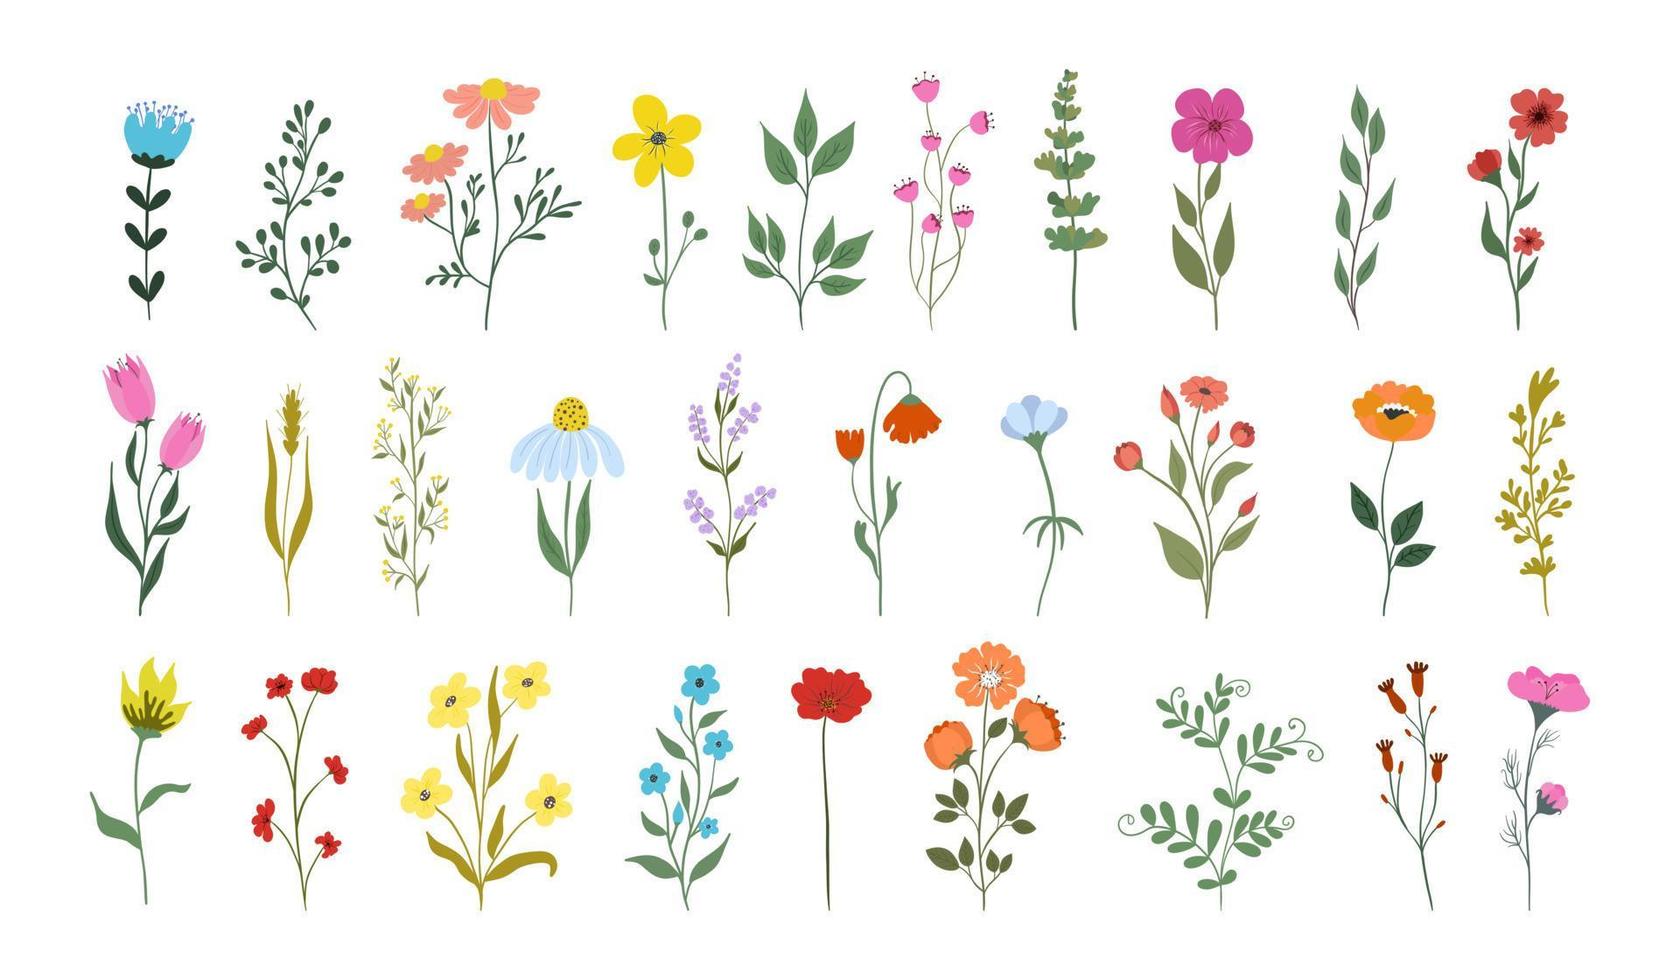 raccolta di bellissime erbe selvatiche, piante erbacee fiorite, fiori che sbocciano, isolati su sfondo bianco. illustrazione botanica dettagliata disegnata a mano. vettore